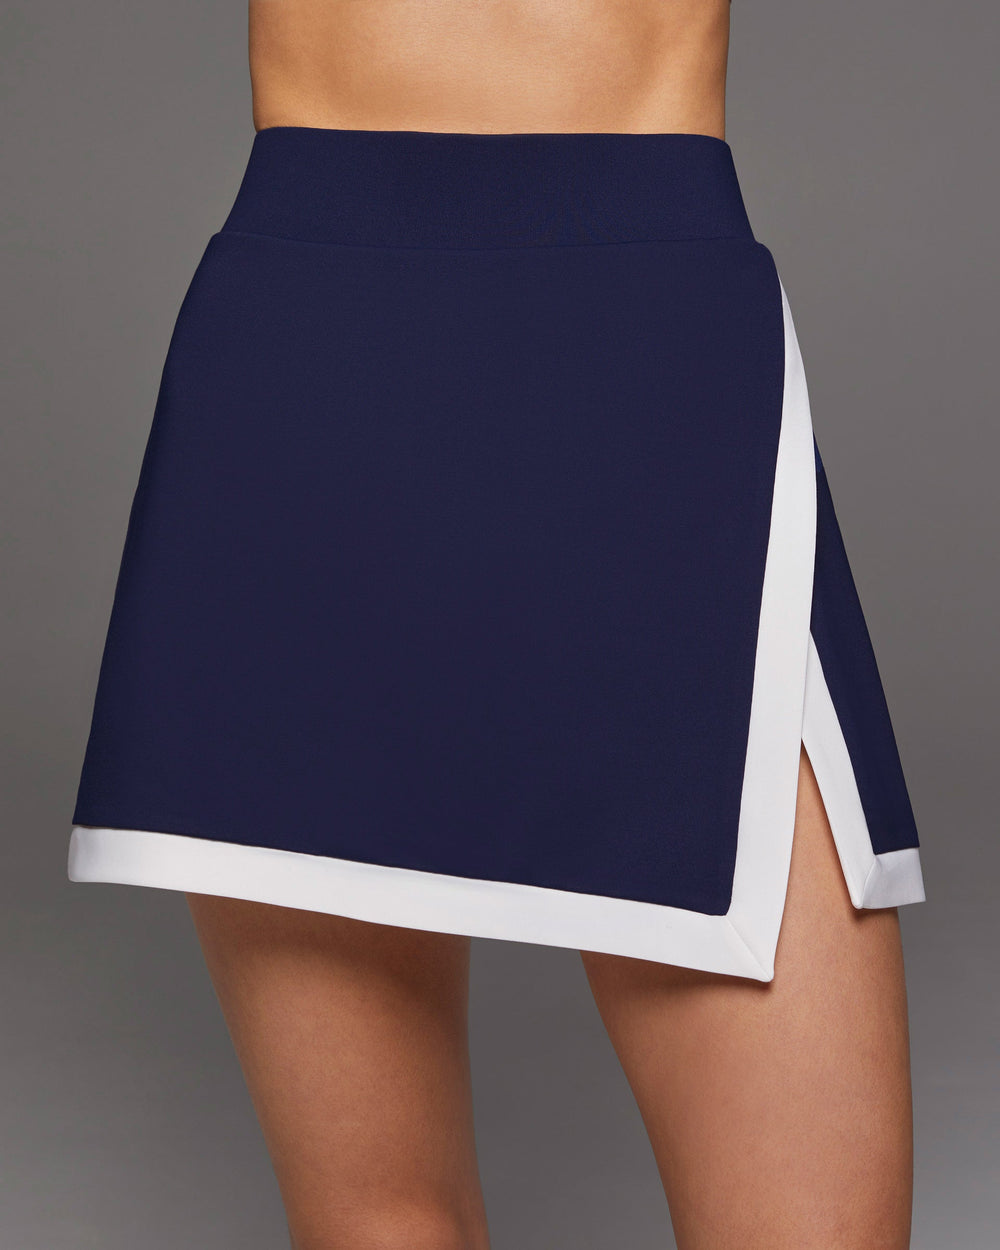 Rival Tennis Skirt W/ Shorts - Admiral Blue/White